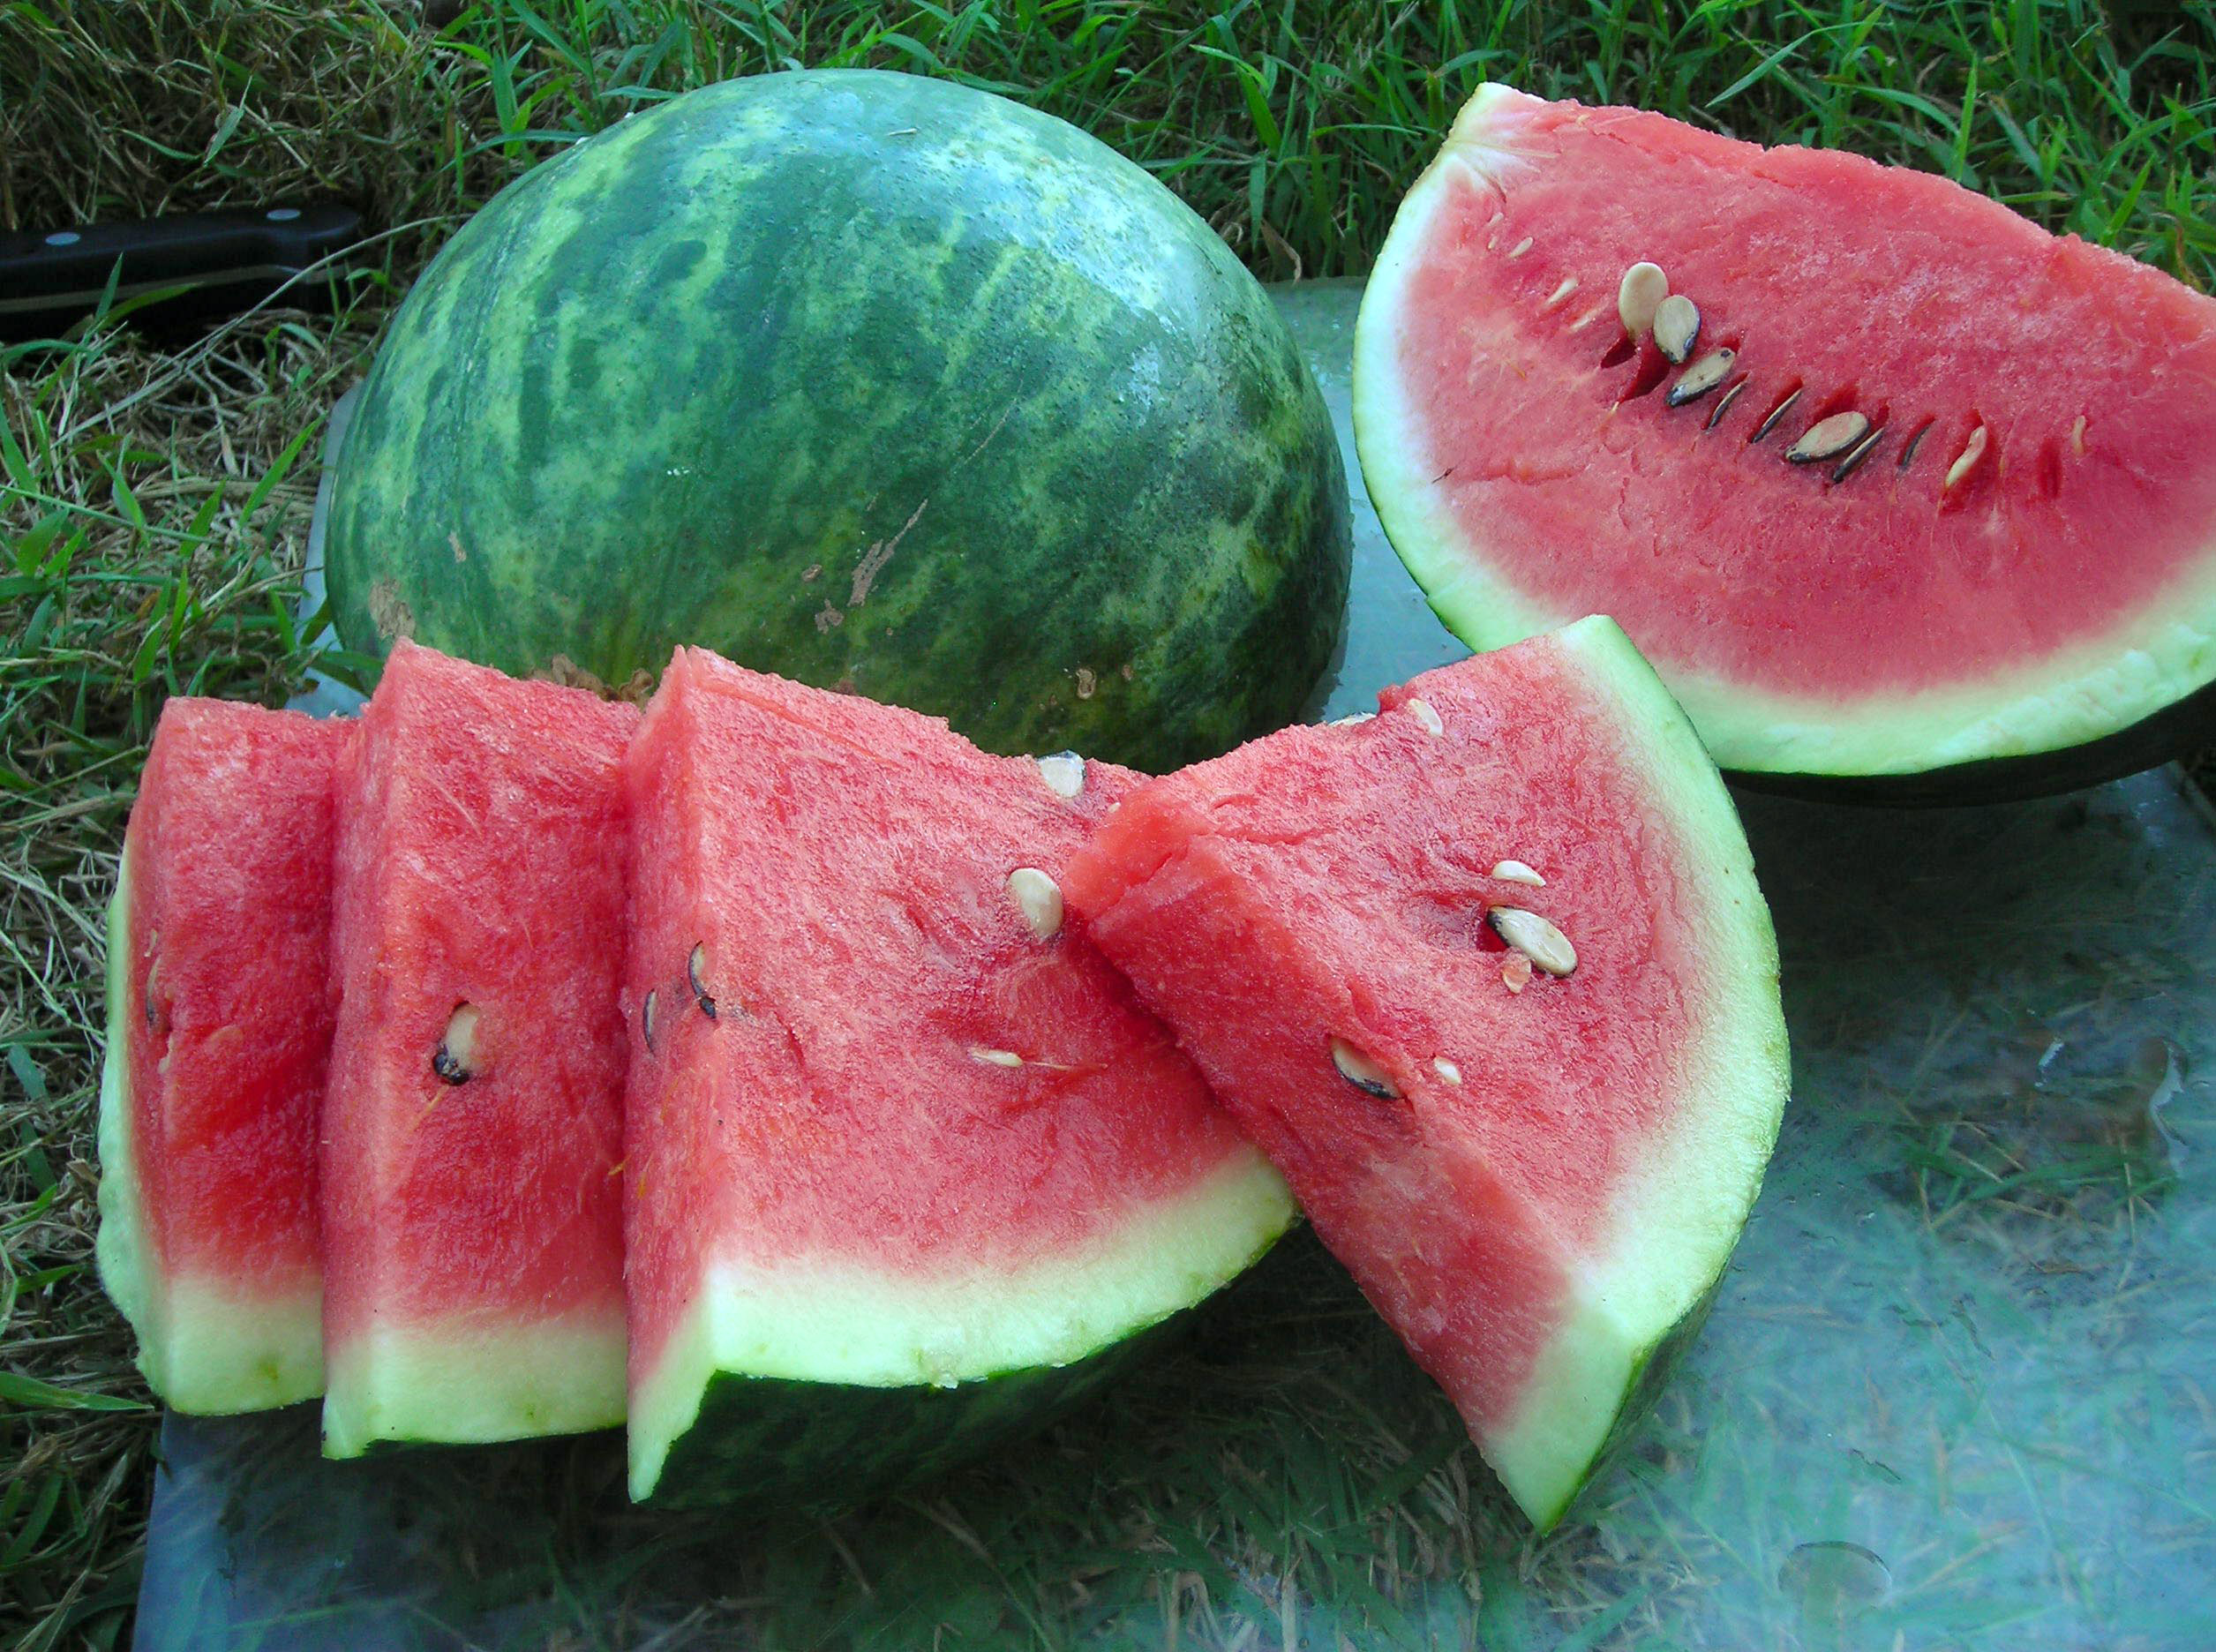 https://www.southernexposure.com/media/products/originals/watermelon-wilson-sweet-f0d9aa868ff1d8fdf85d1d2f837b92b2.jpg